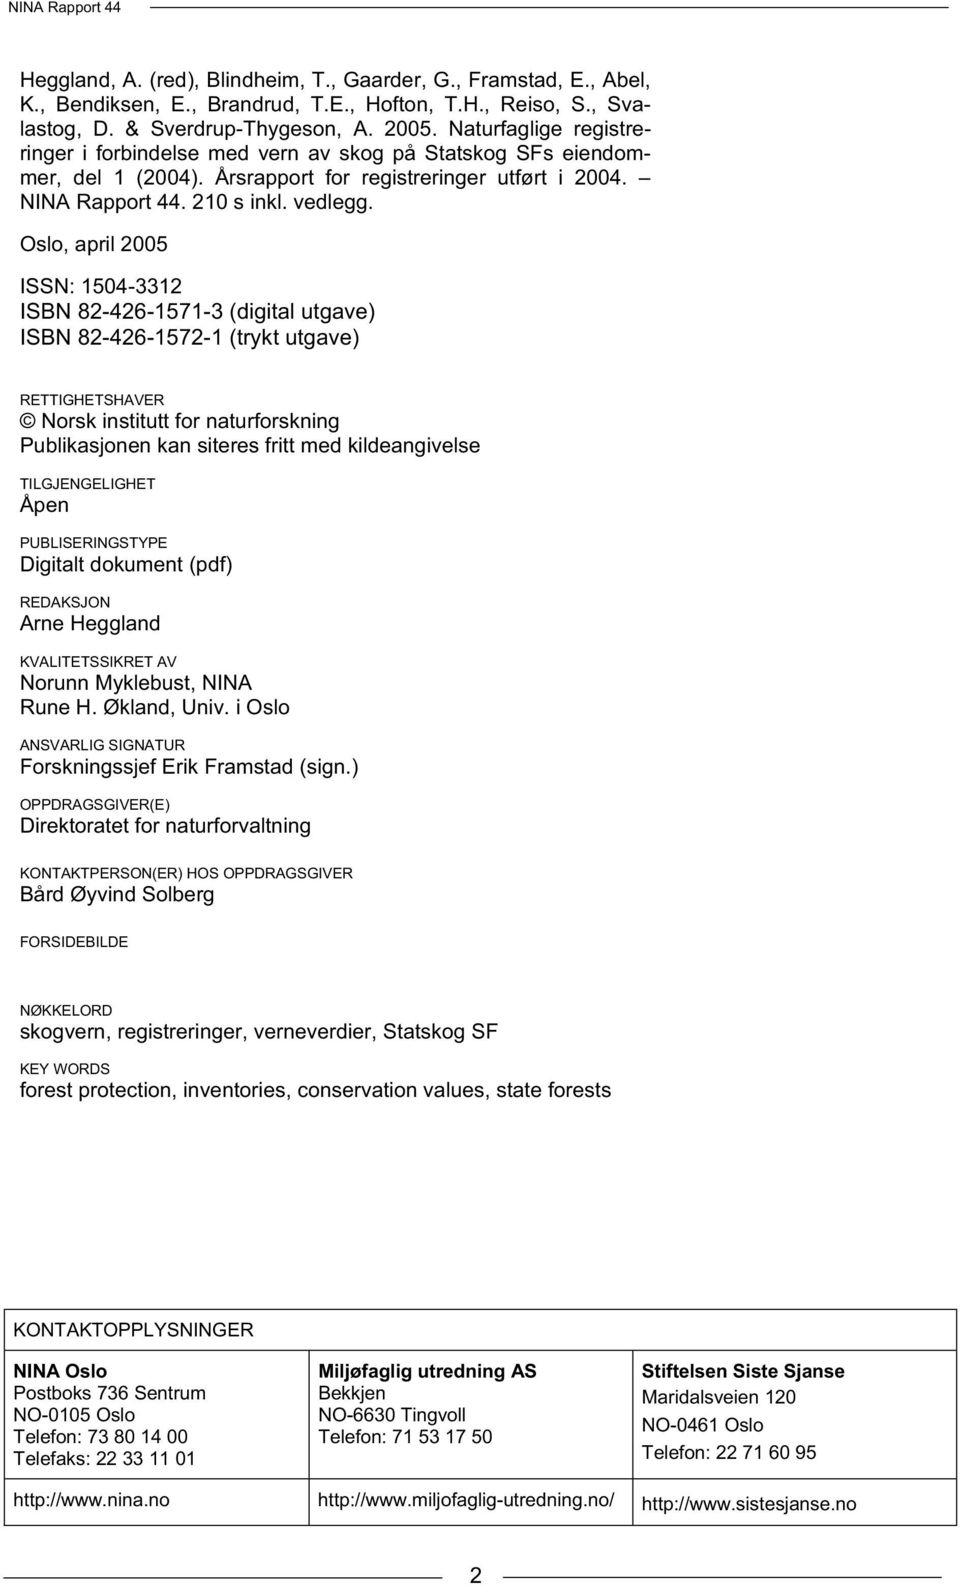 Oslo, april 2005 ISSN: 1504-3312 ISBN 82-426-1571-3 (digital utgave) ISBN 82-426-1572-1 (trykt utgave) RETTIGHETSHAVER Norsk institutt for naturforskning Publikasjonen kan siteres fritt med